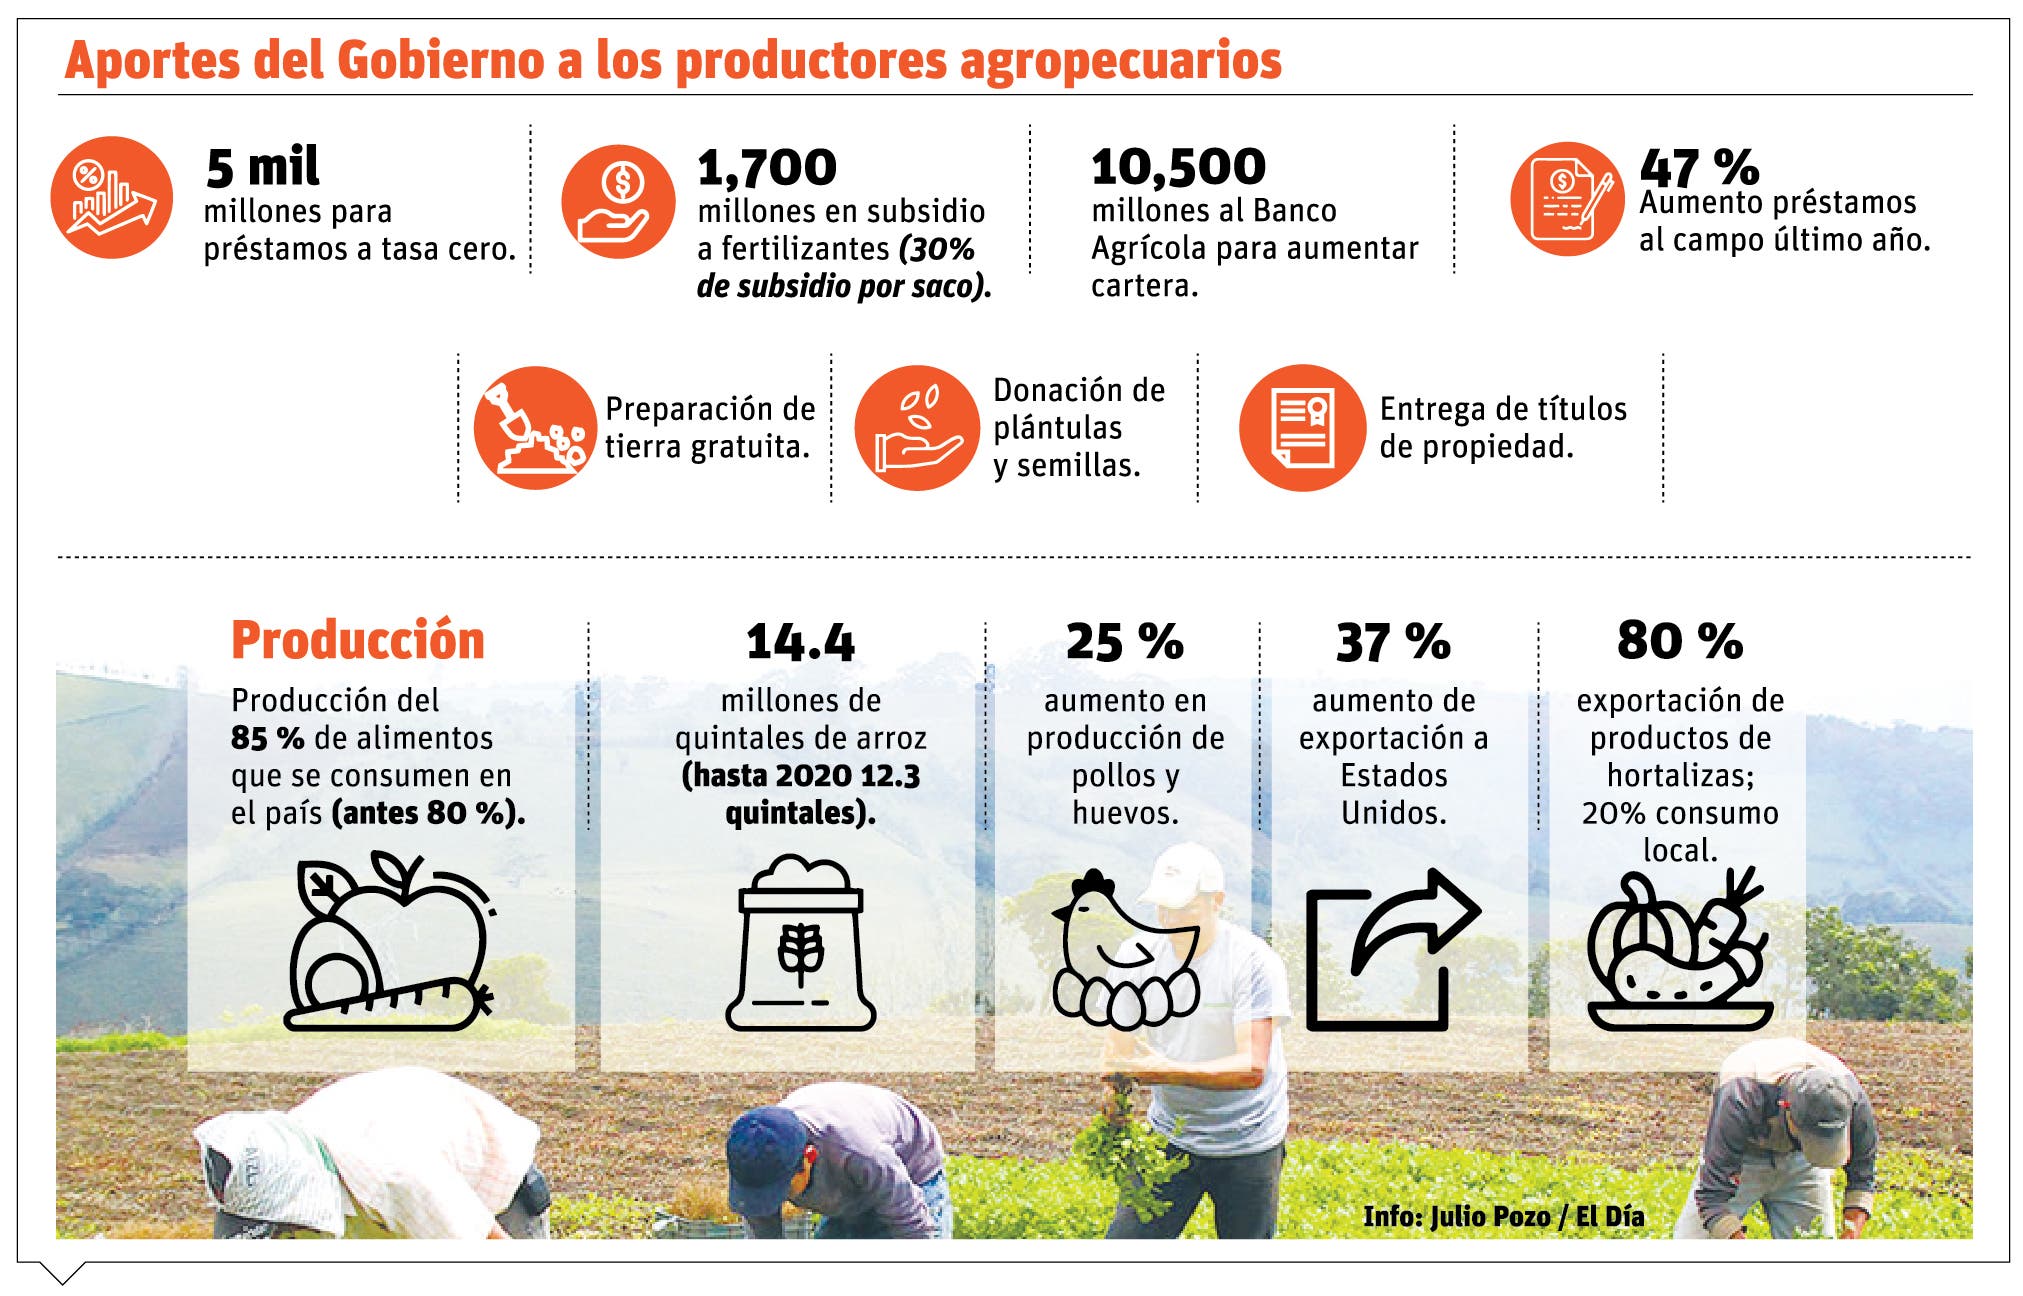 Producción agrícola ha aumentado en el país  pese a pandemia y guerra